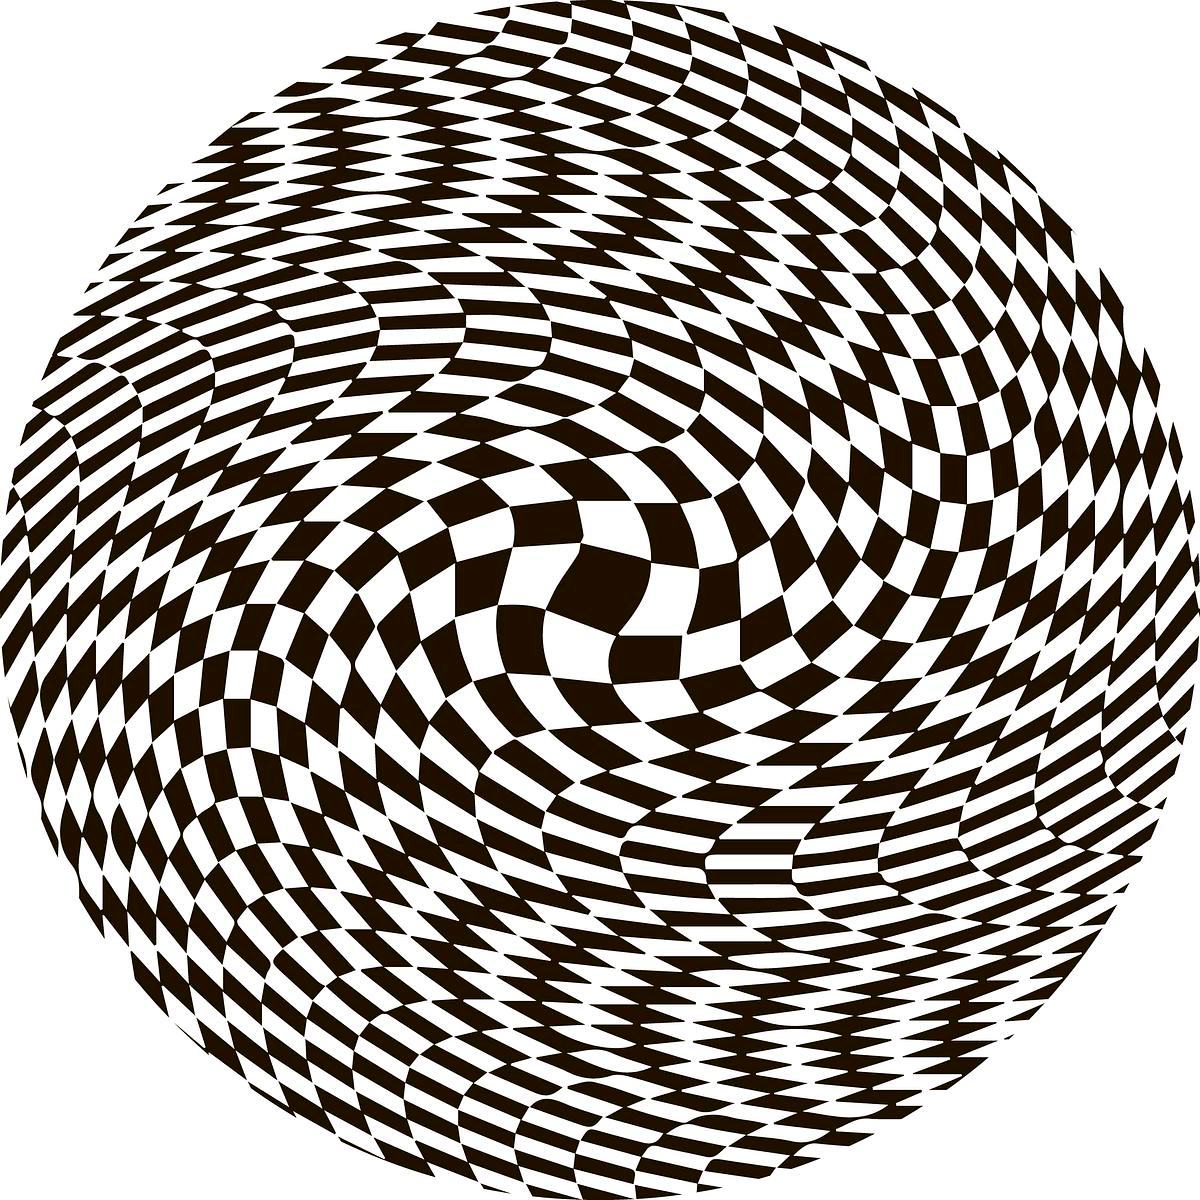 Титульное изображение для страницы события: оптическая иллюзия, круг, состоящий из закручееного в разных направлениях шахматного паттерна из черных и белых квадратов